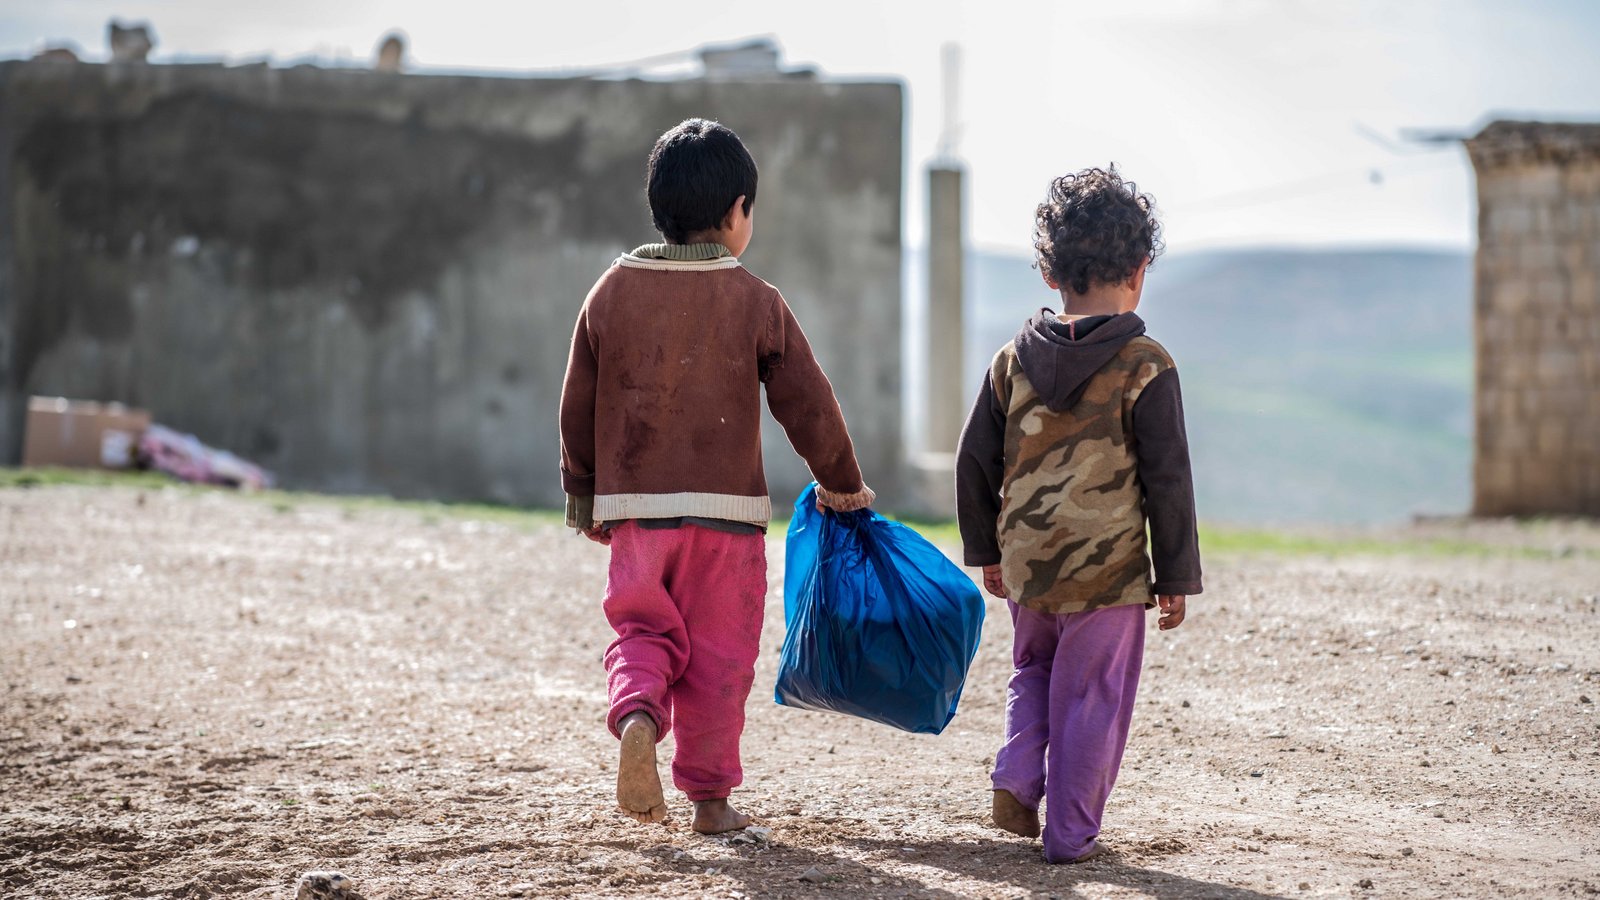 Kinder im Flüchtlingslager